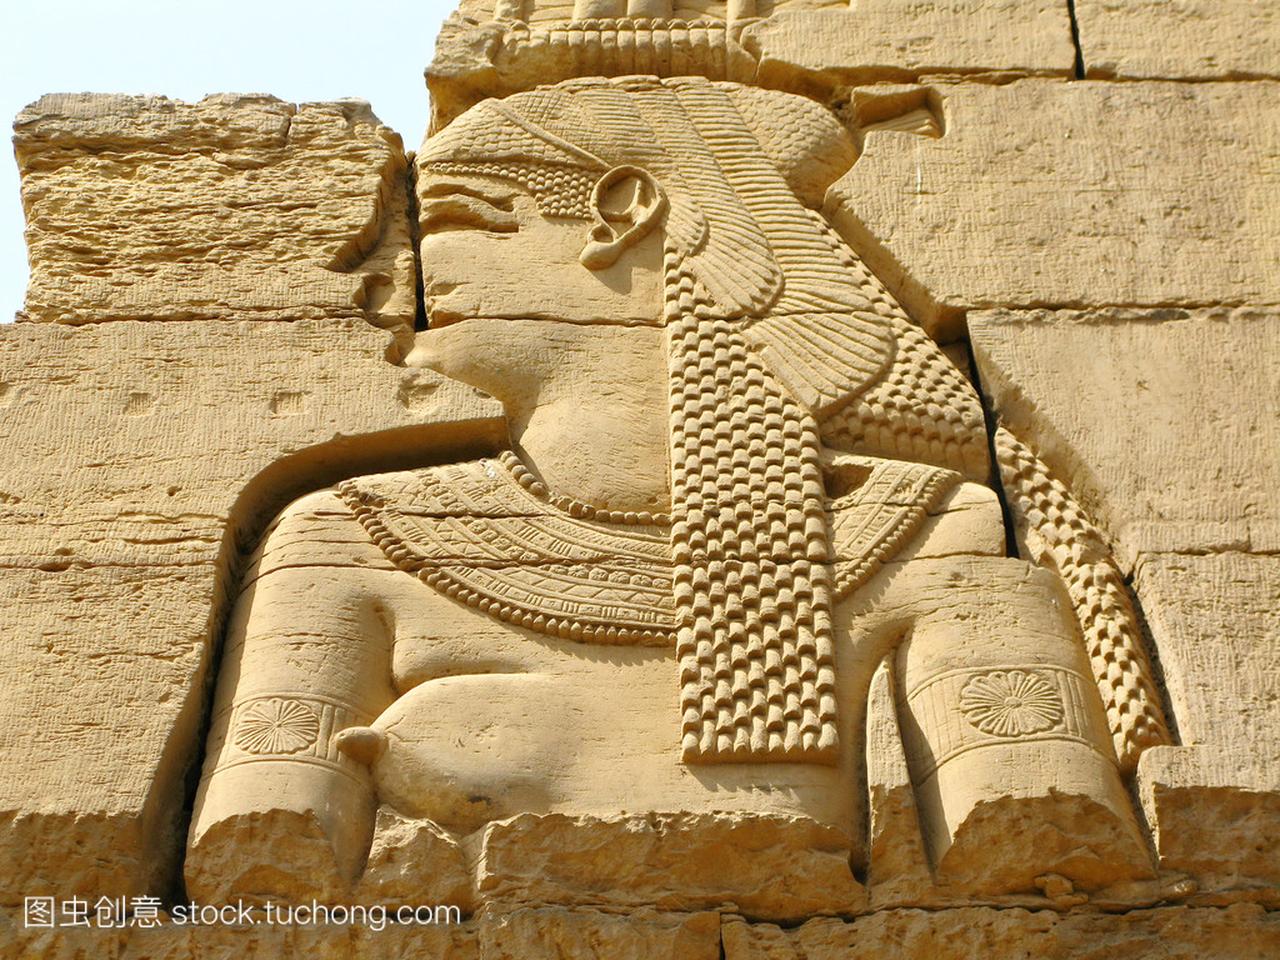 埃及翁庙: 女神哈托尔